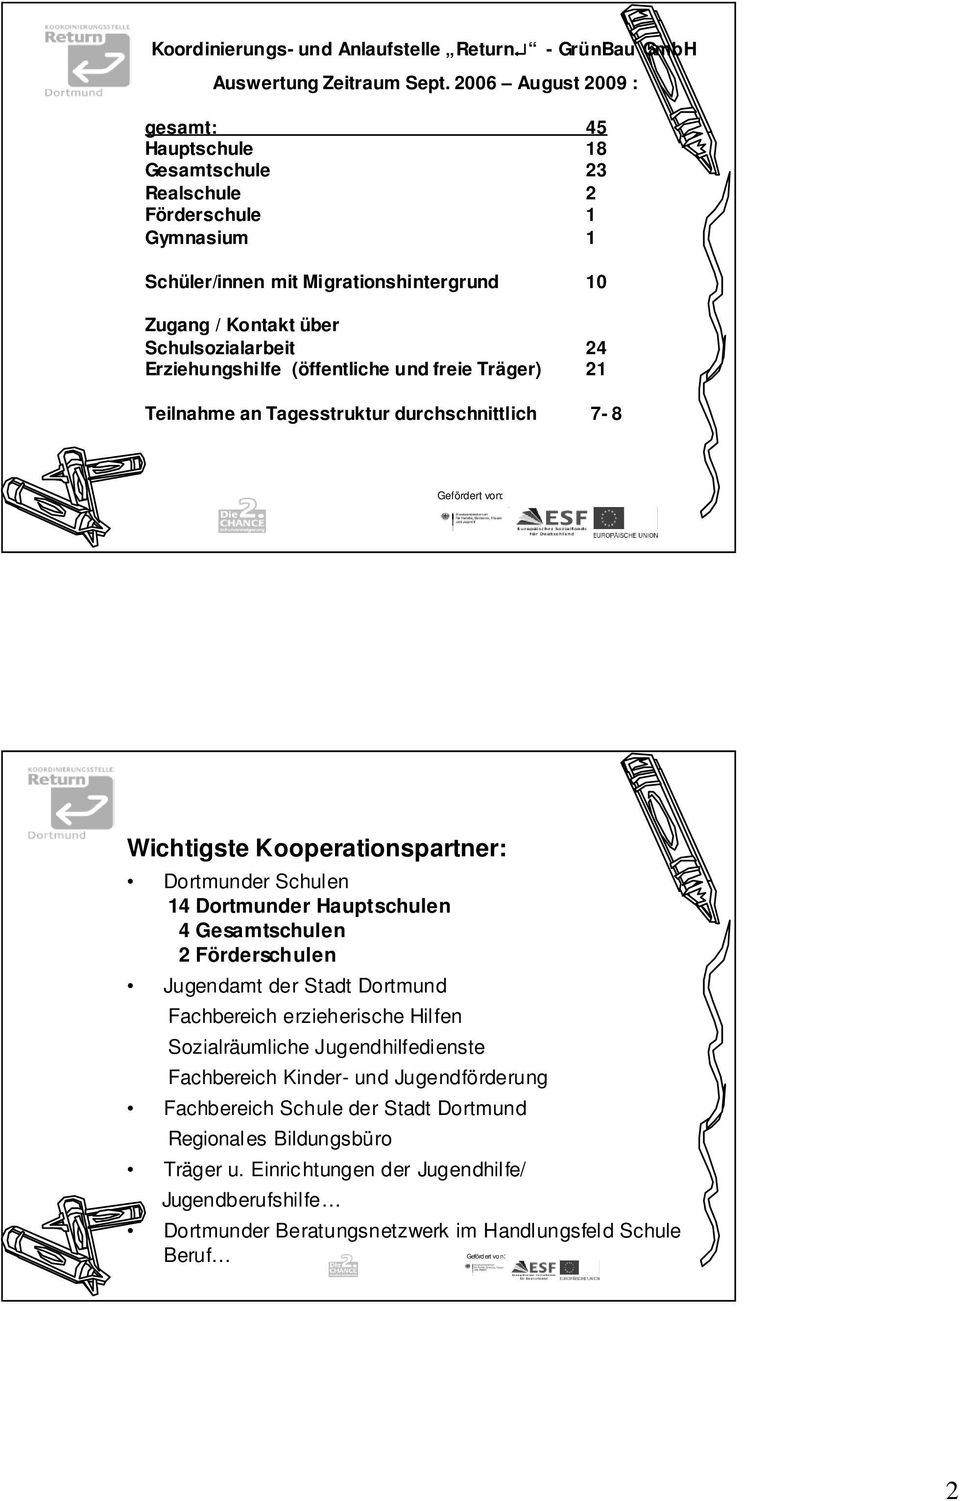 Erziehungshilfe (öffentliche und freie Träger) 21 Teilnahme an Tagesstruktur durchschnittlich 7-8 Wichtigste Kooperationspartner: Dortmunder Schulen 14 Dortmunder Hauptschulen 4 Gesamtschulen 2